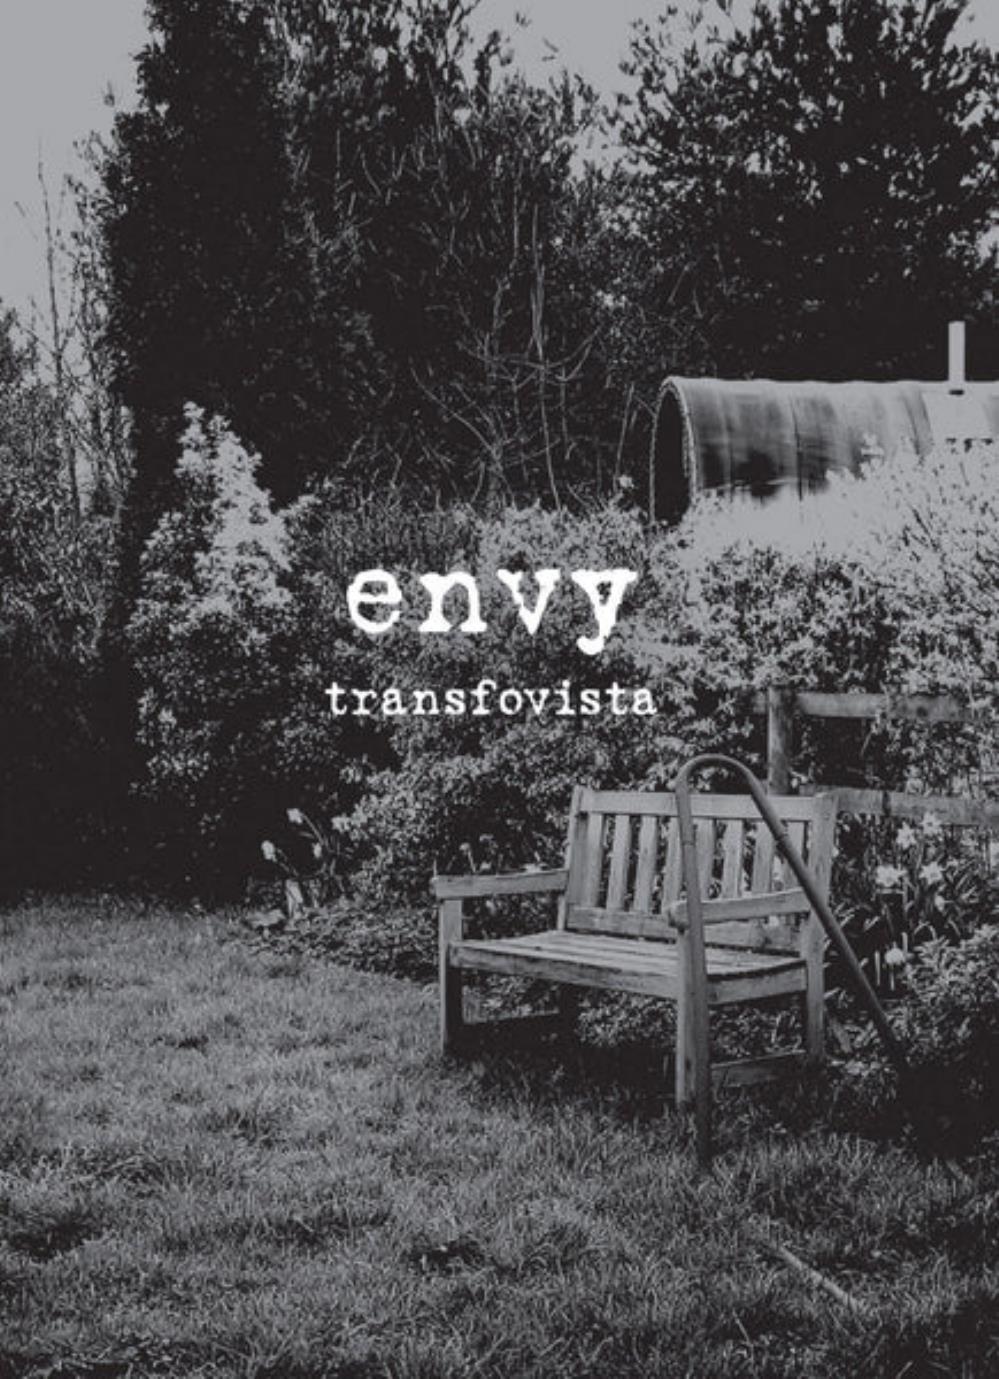 Envy Transfovista album cover